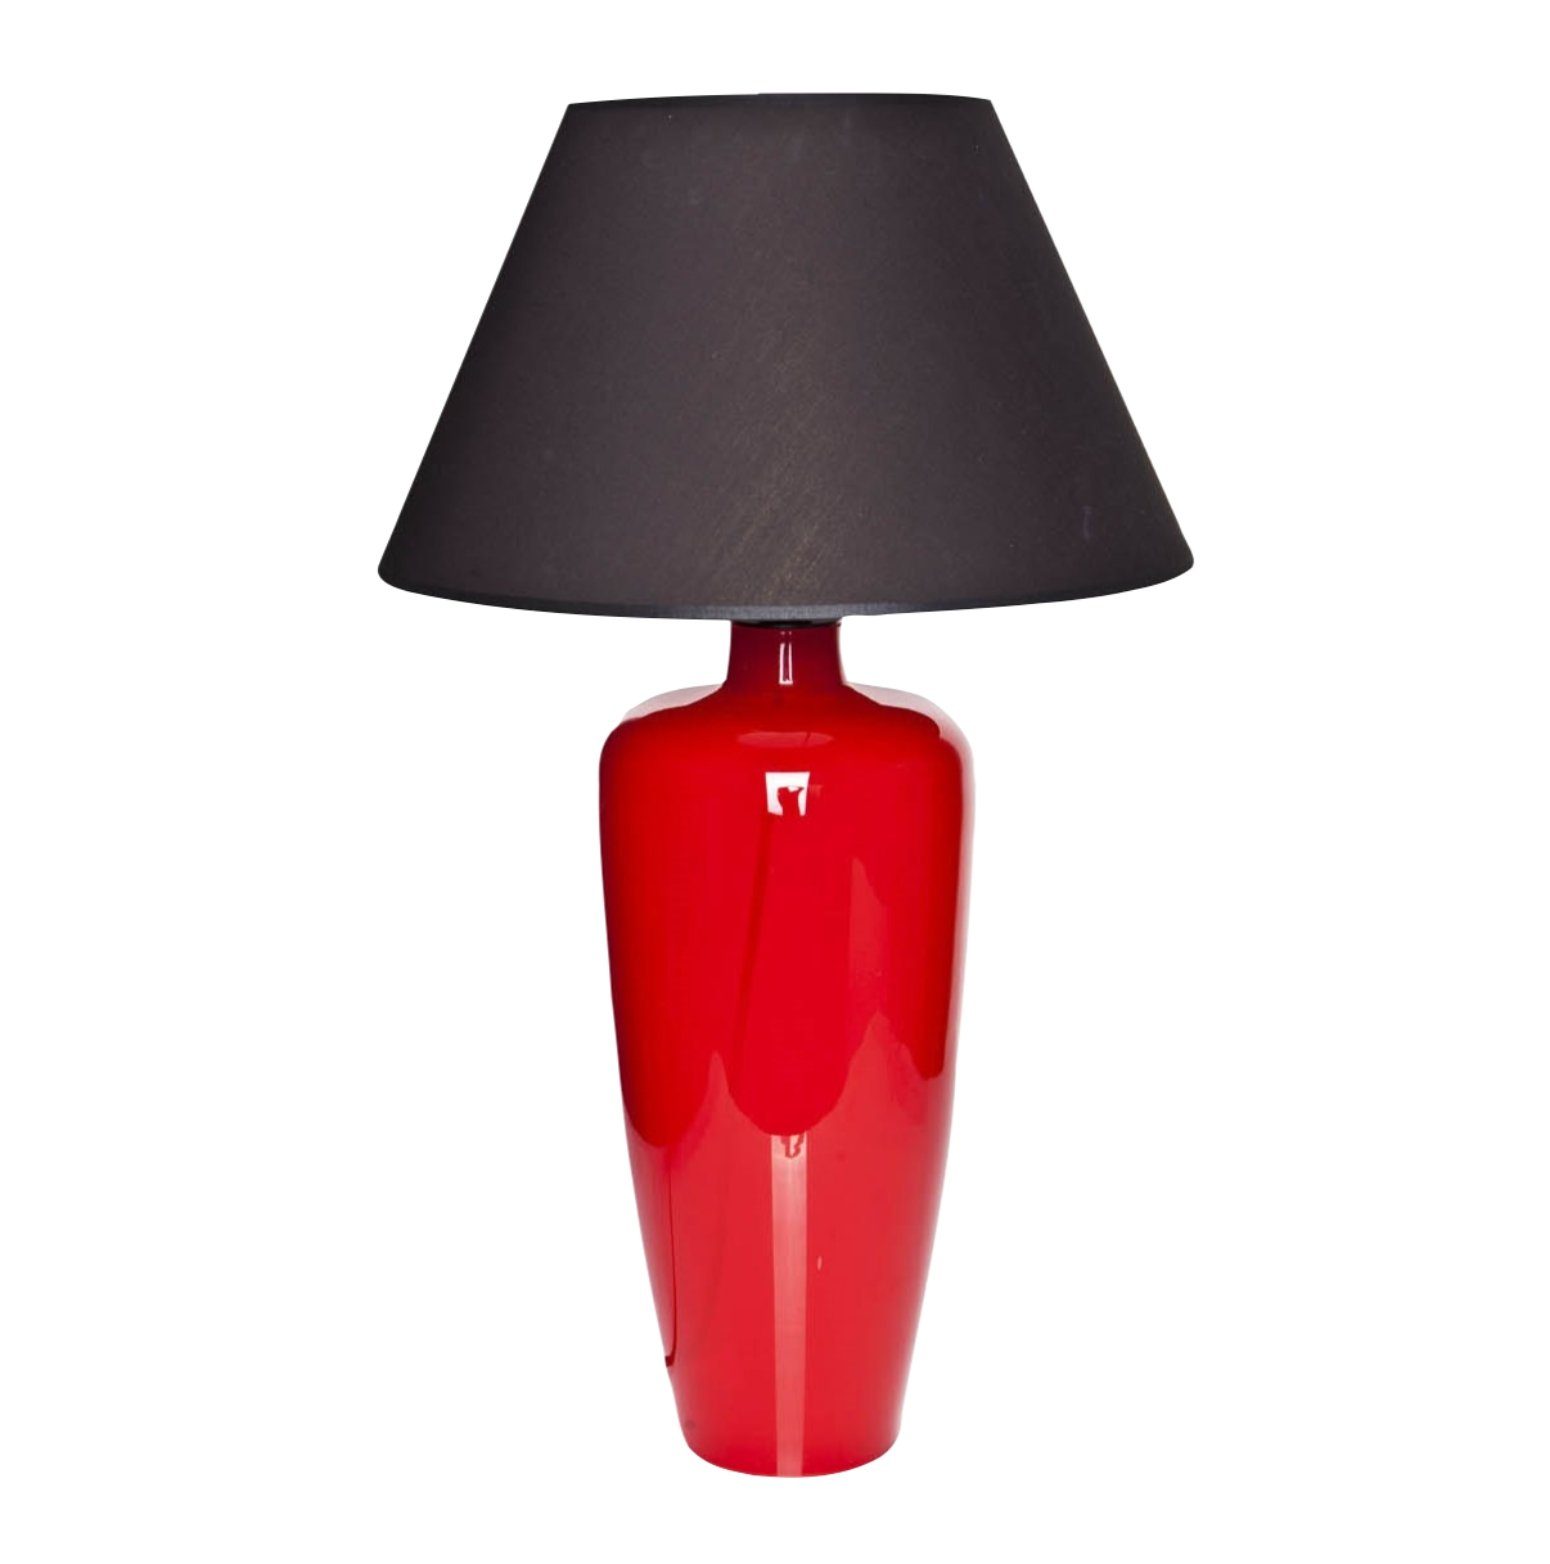 Signature Home Collection Tischleuchte Tischlampe aus Glas rot mit Lampenschirm, ohne Leuchtmittel, warmweiß, Glaslampe in Farbe rot | Tischlampen